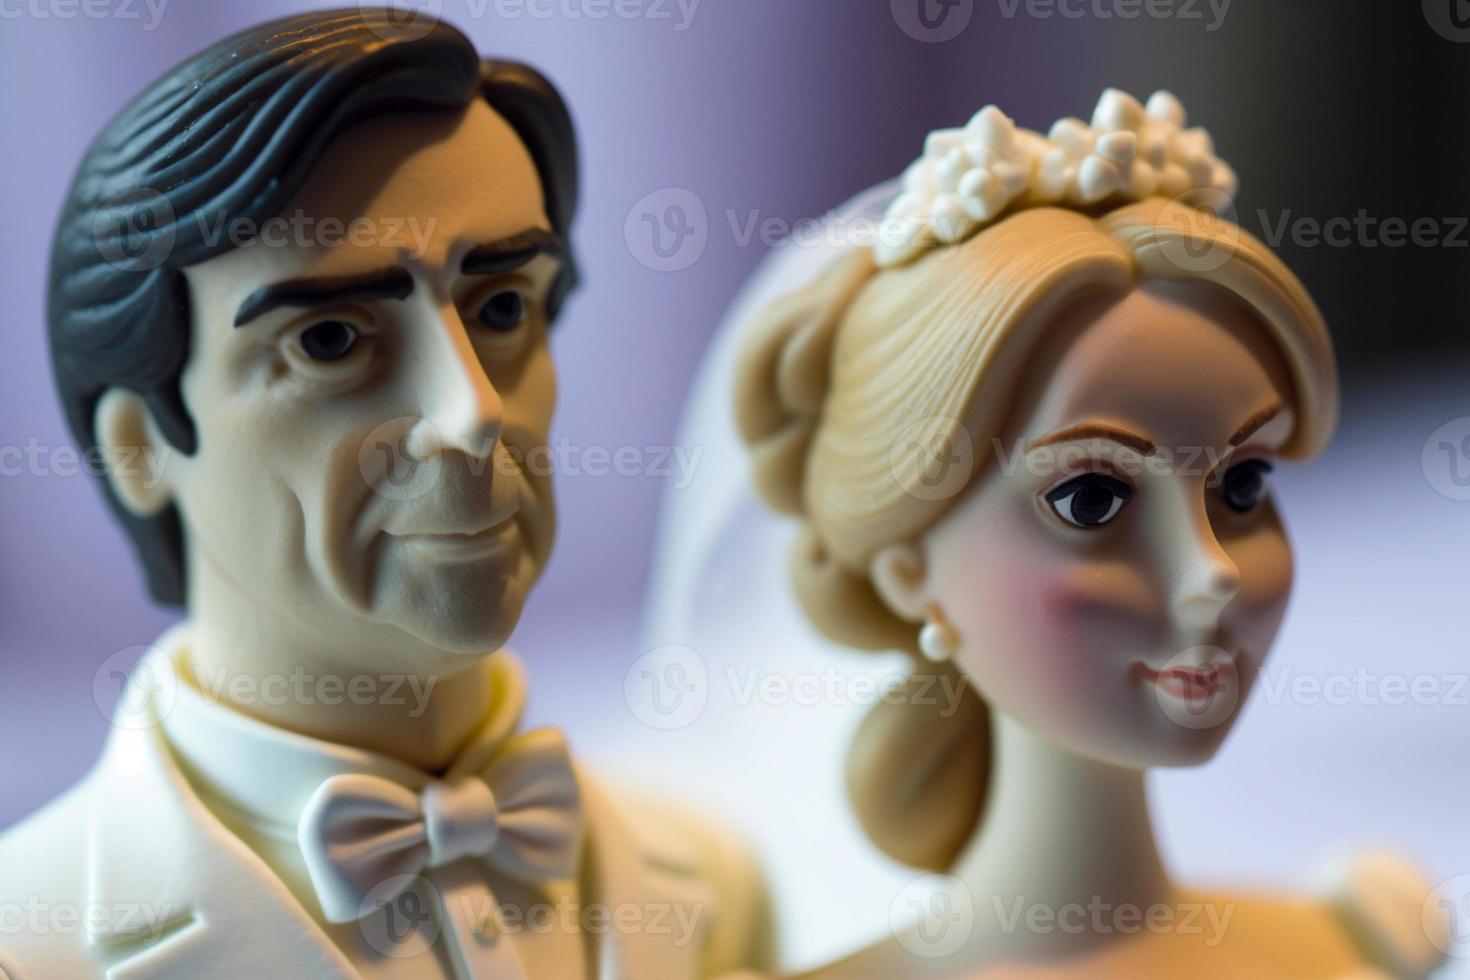 novia y novio en parte superior de pastel o muñecas en parte superior de pastel. nostalgia y recuerdos de un bueno contento matrimonio foto